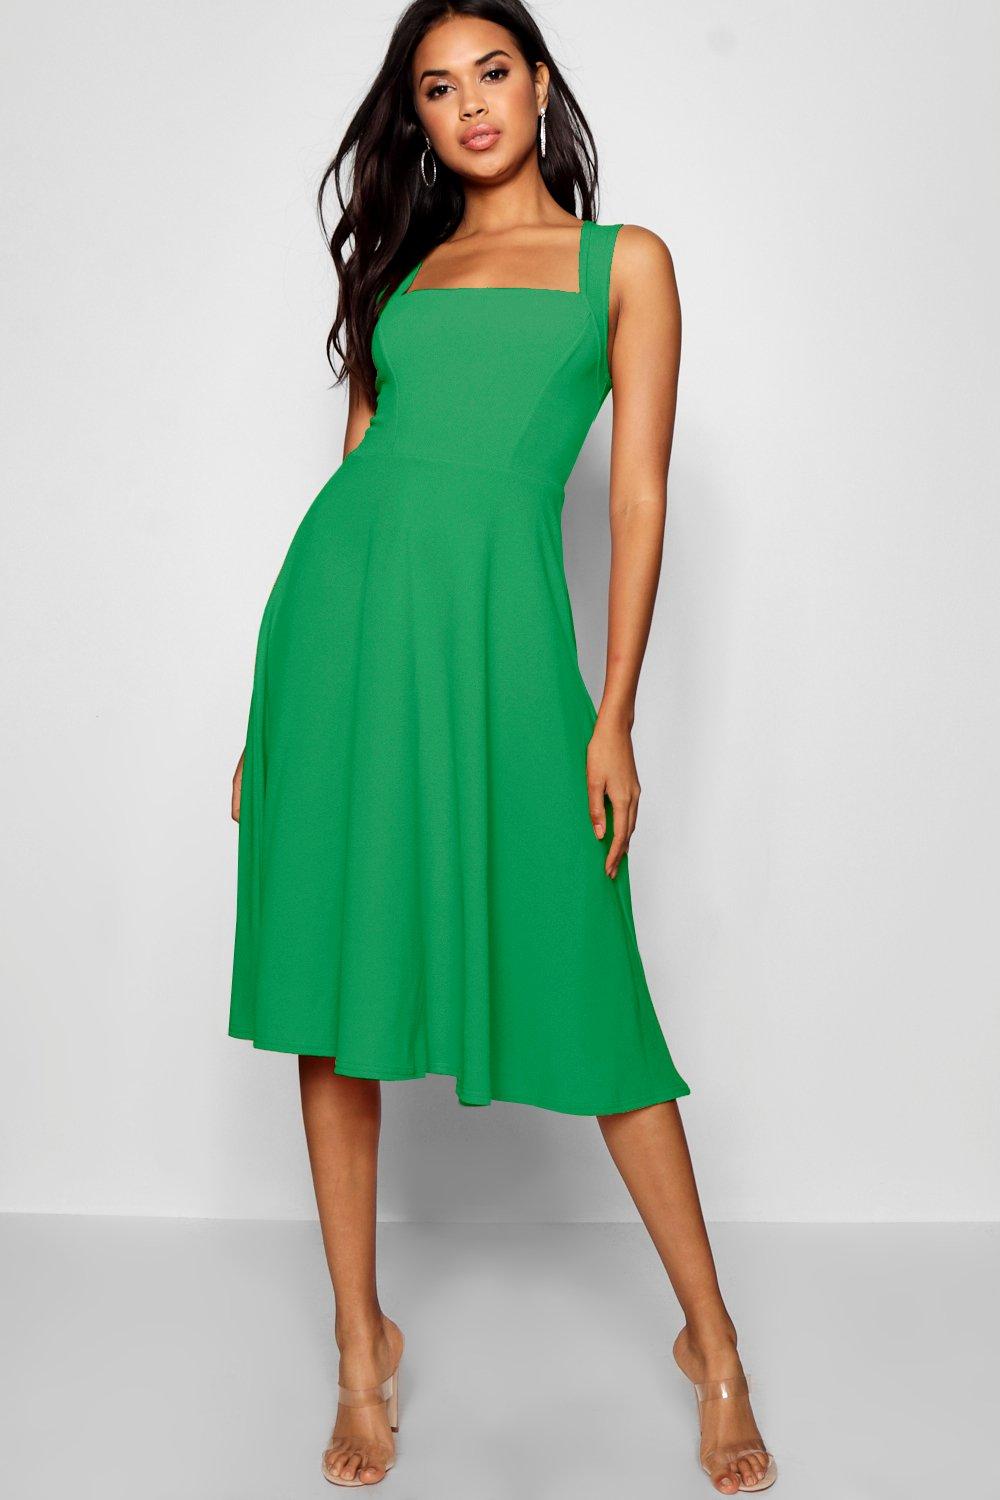 emerald green dress nz